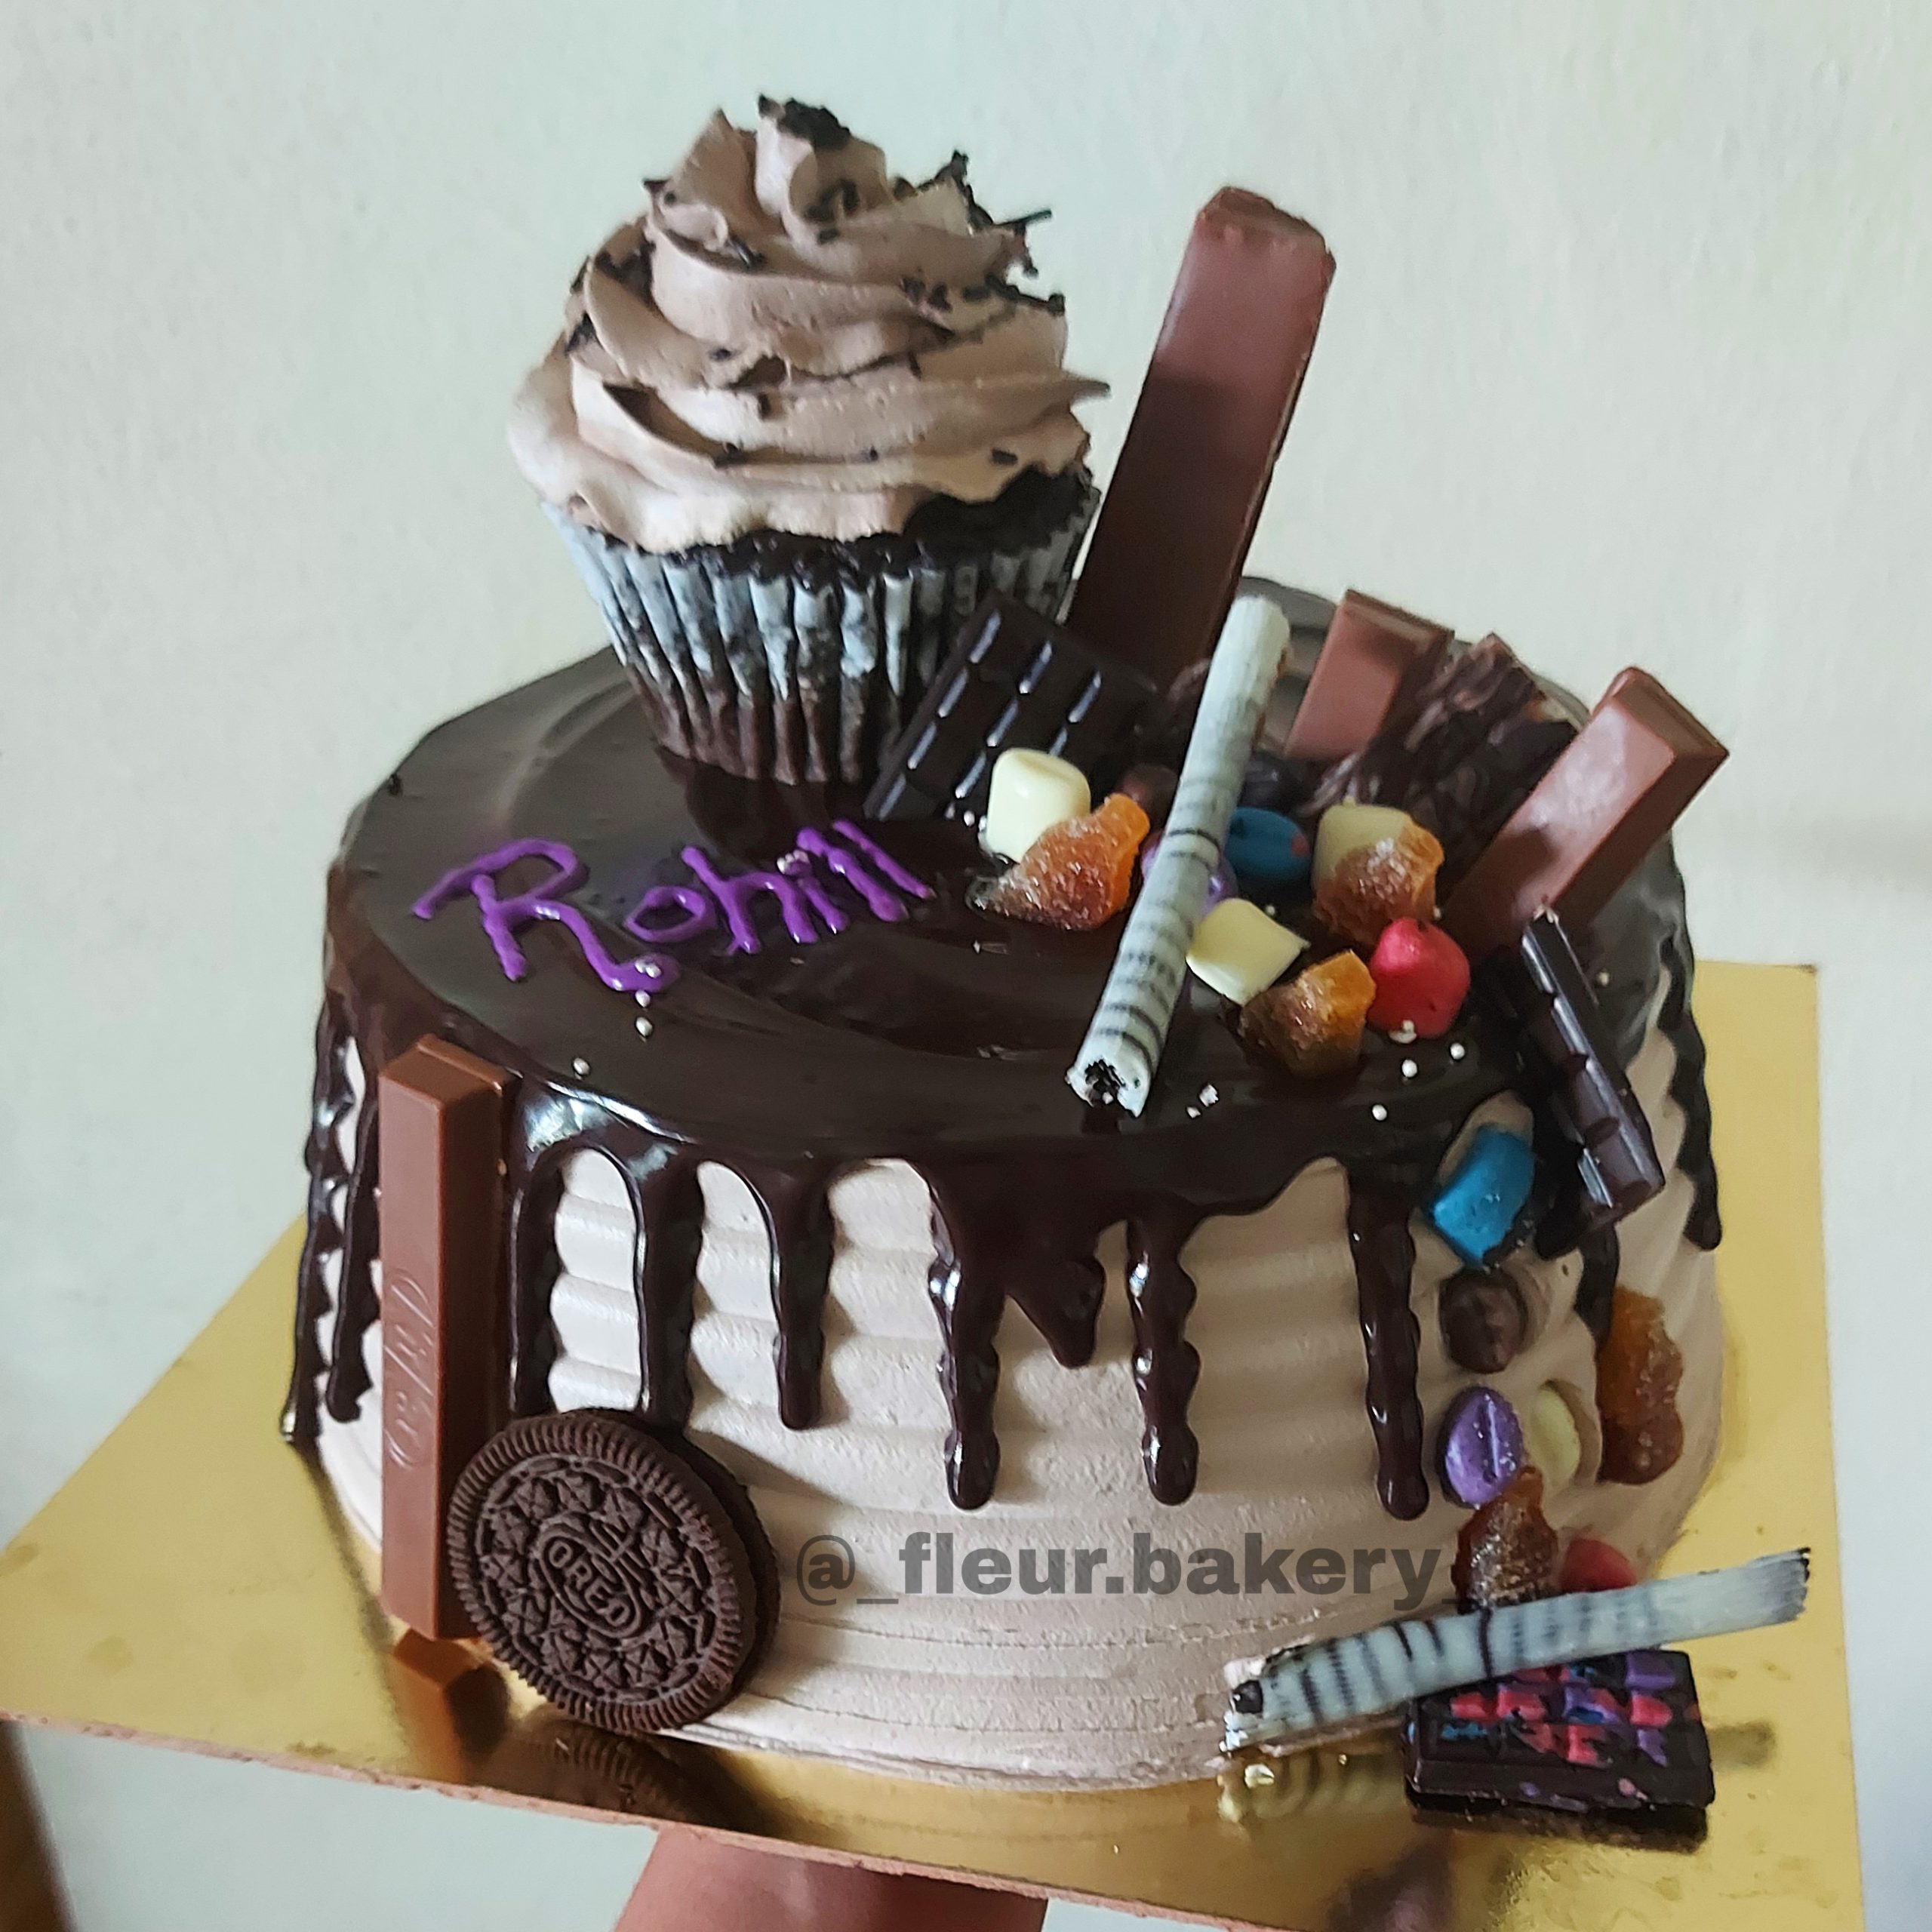 Chocolate Theme Cake Designs, Images, Price Near Me